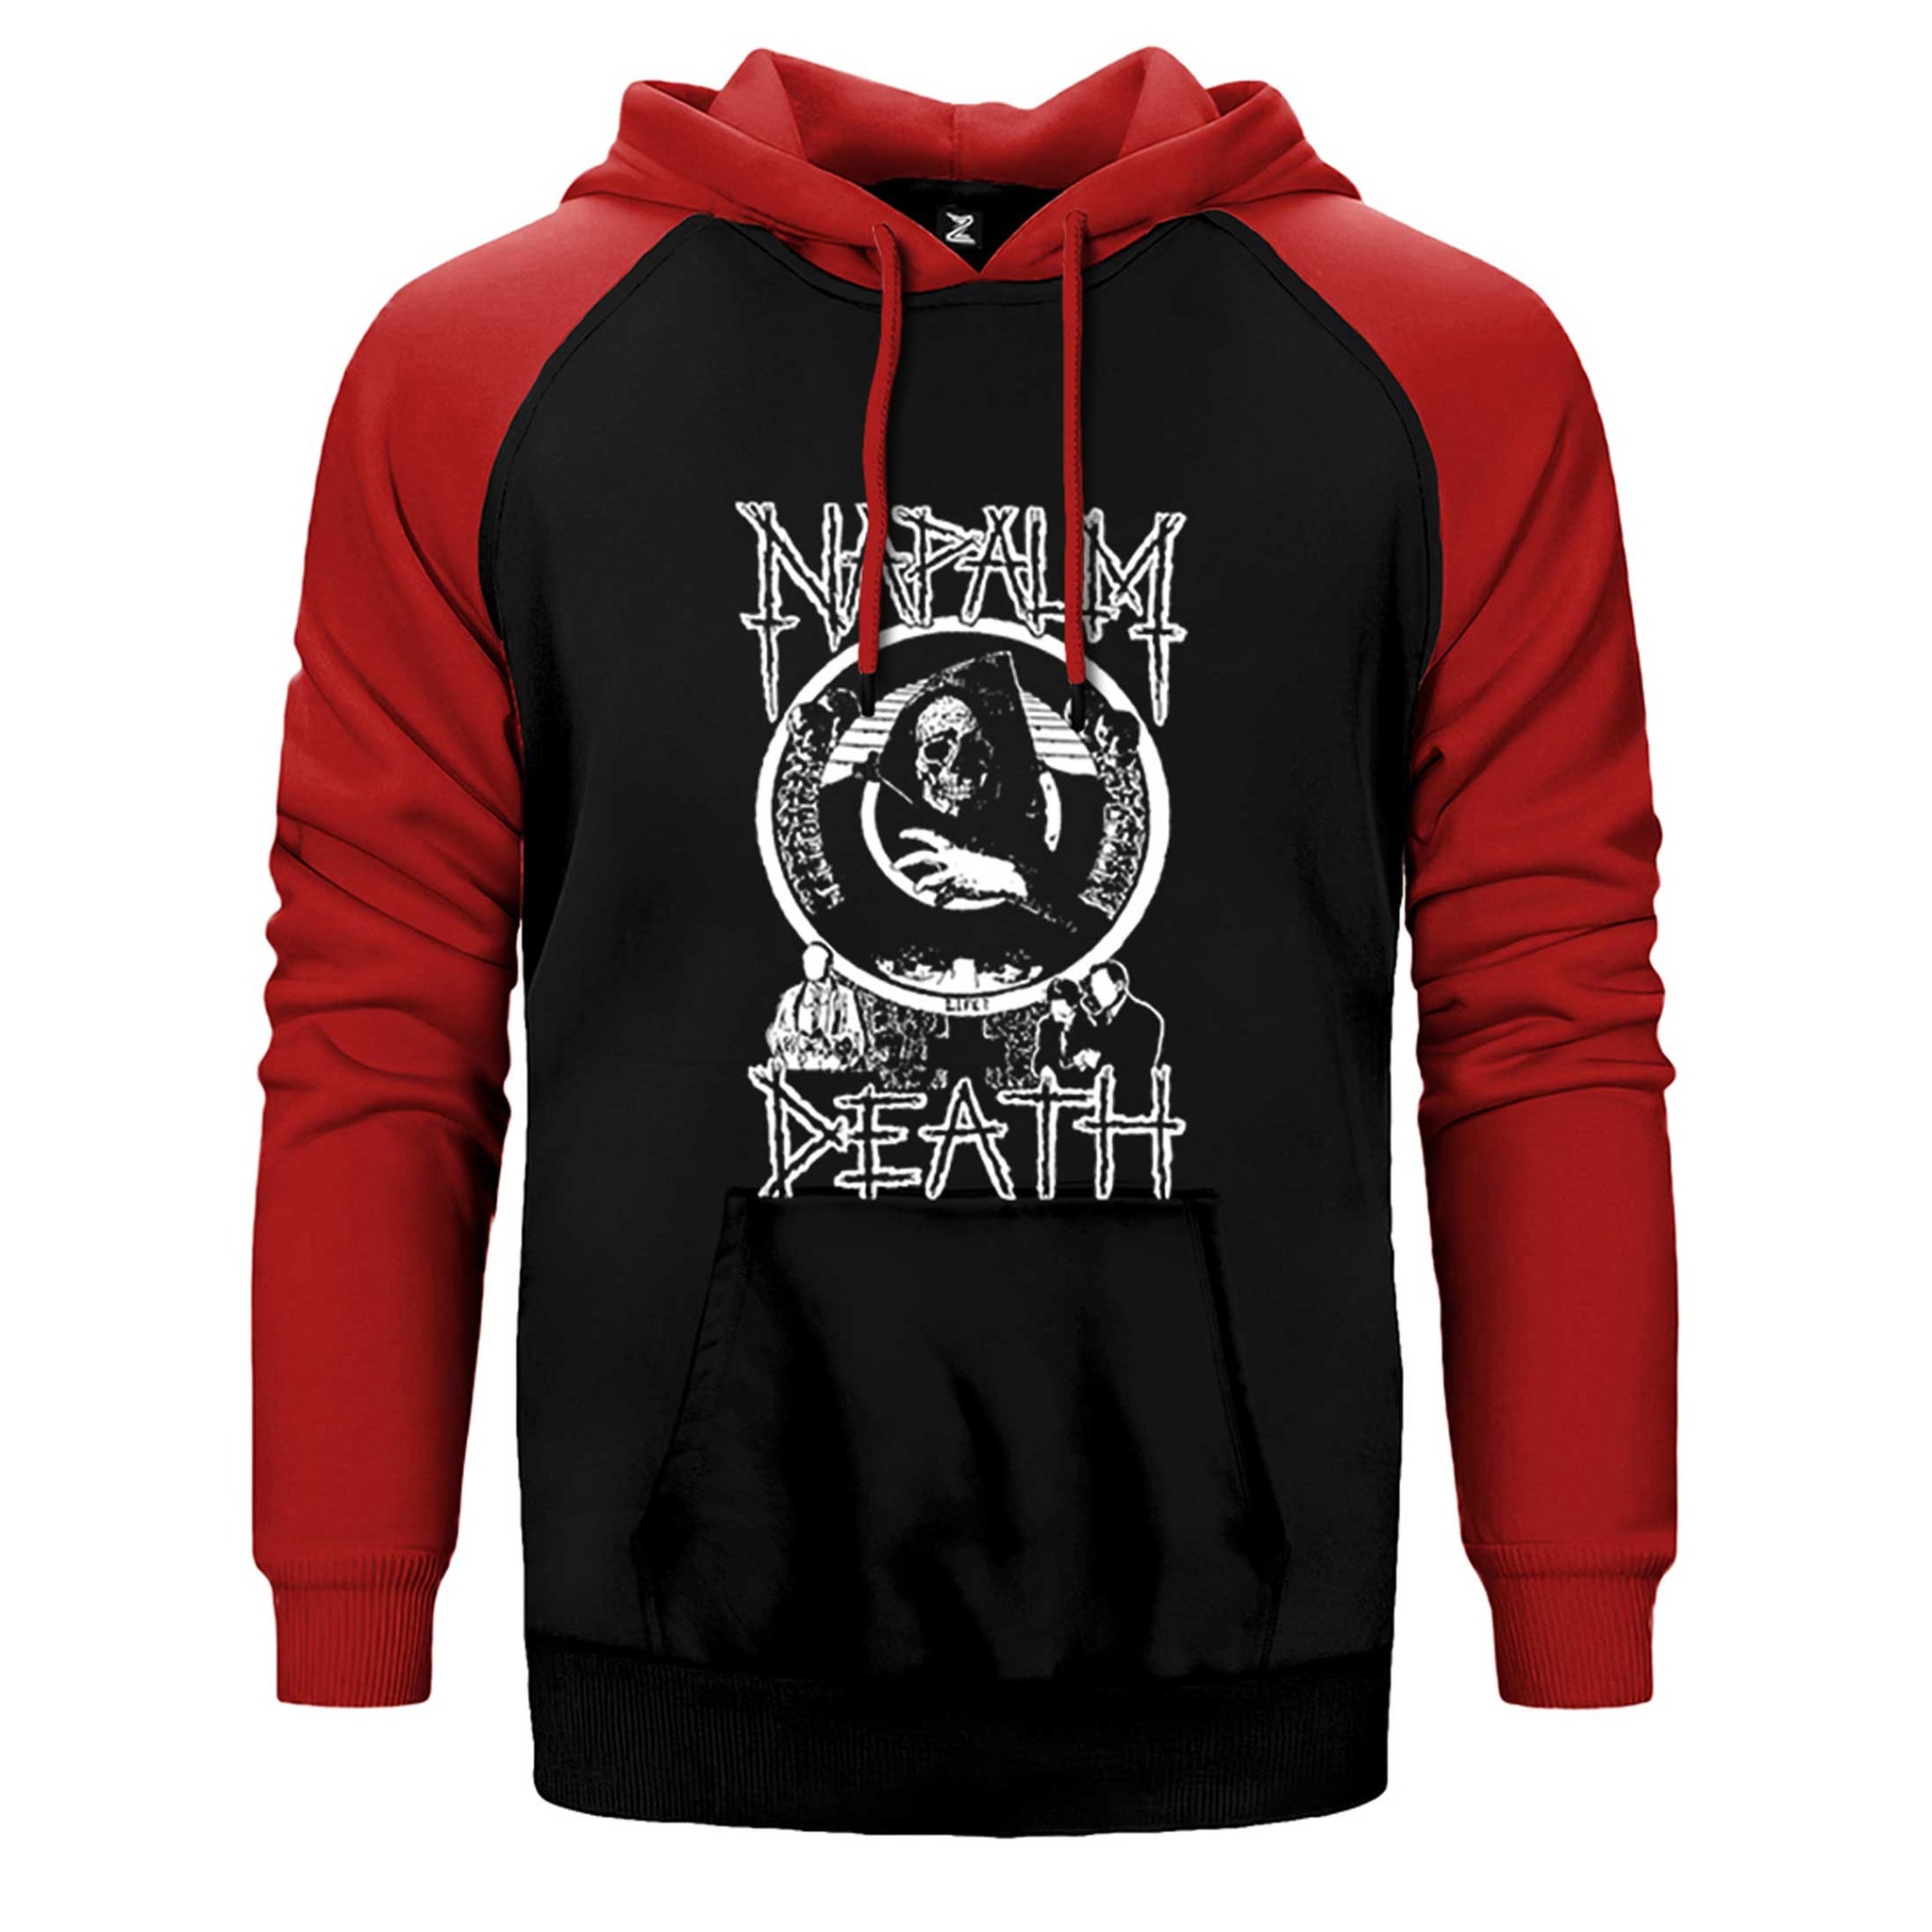 Napalm Death Smear Campaign Çift Renk Reglan Kol Sweatshirt / Hoodie